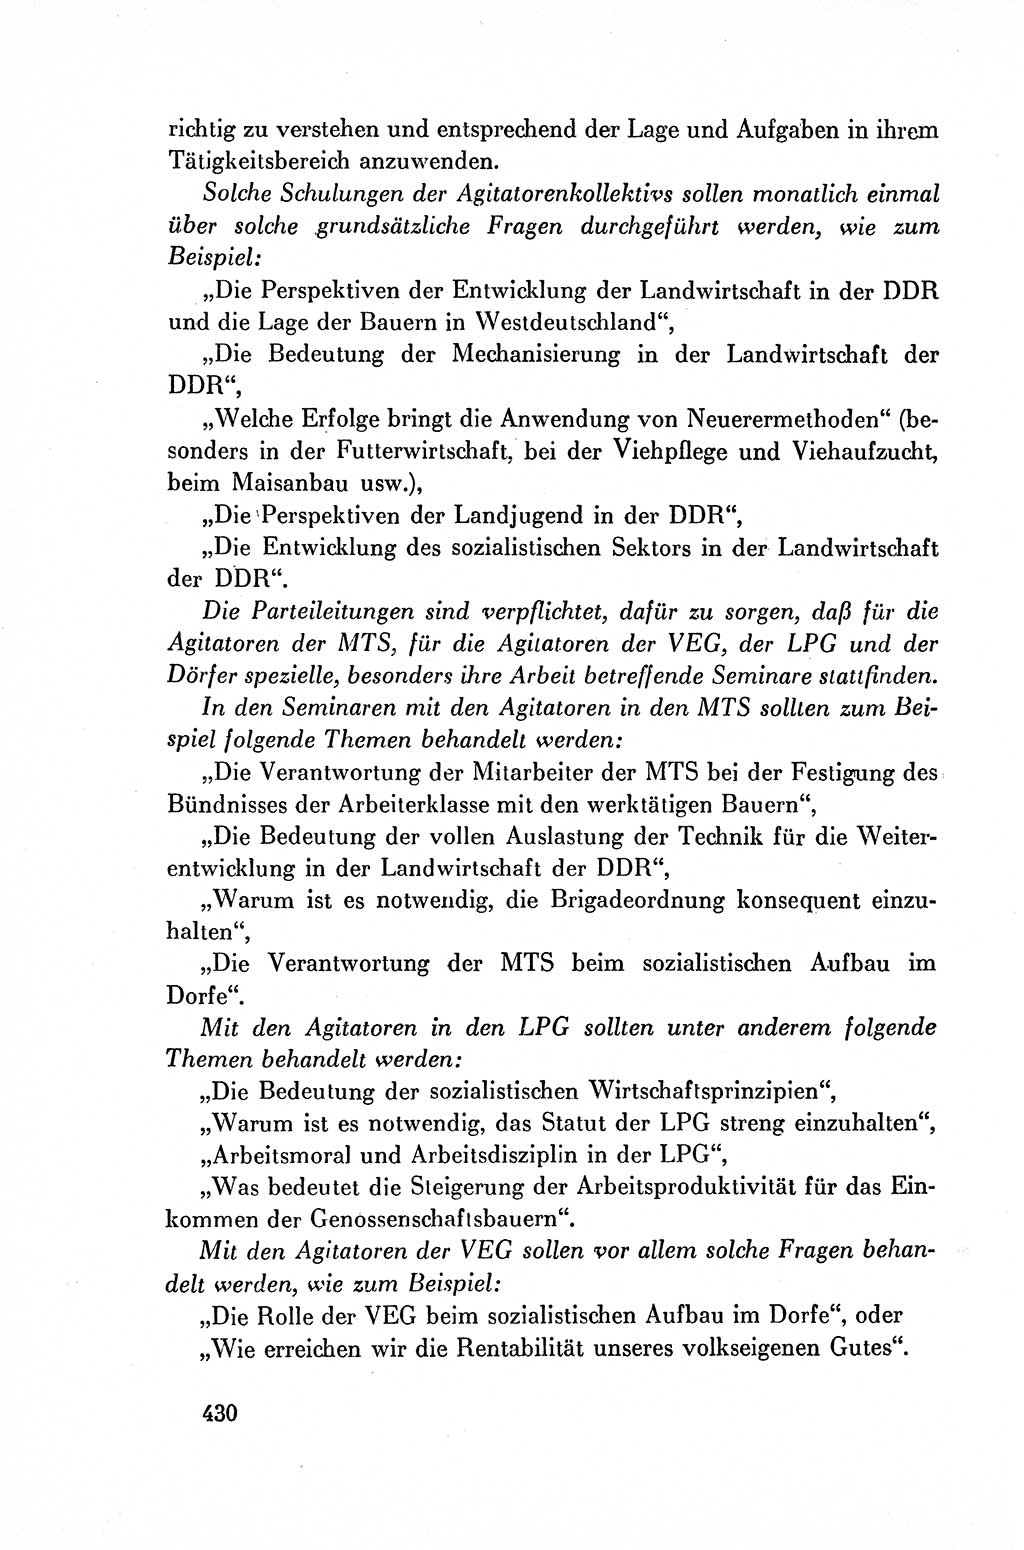 Dokumente der Sozialistischen Einheitspartei Deutschlands (SED) [Deutsche Demokratische Republik (DDR)] 1954-1955, Seite 430 (Dok. SED DDR 1954-1955, S. 430)